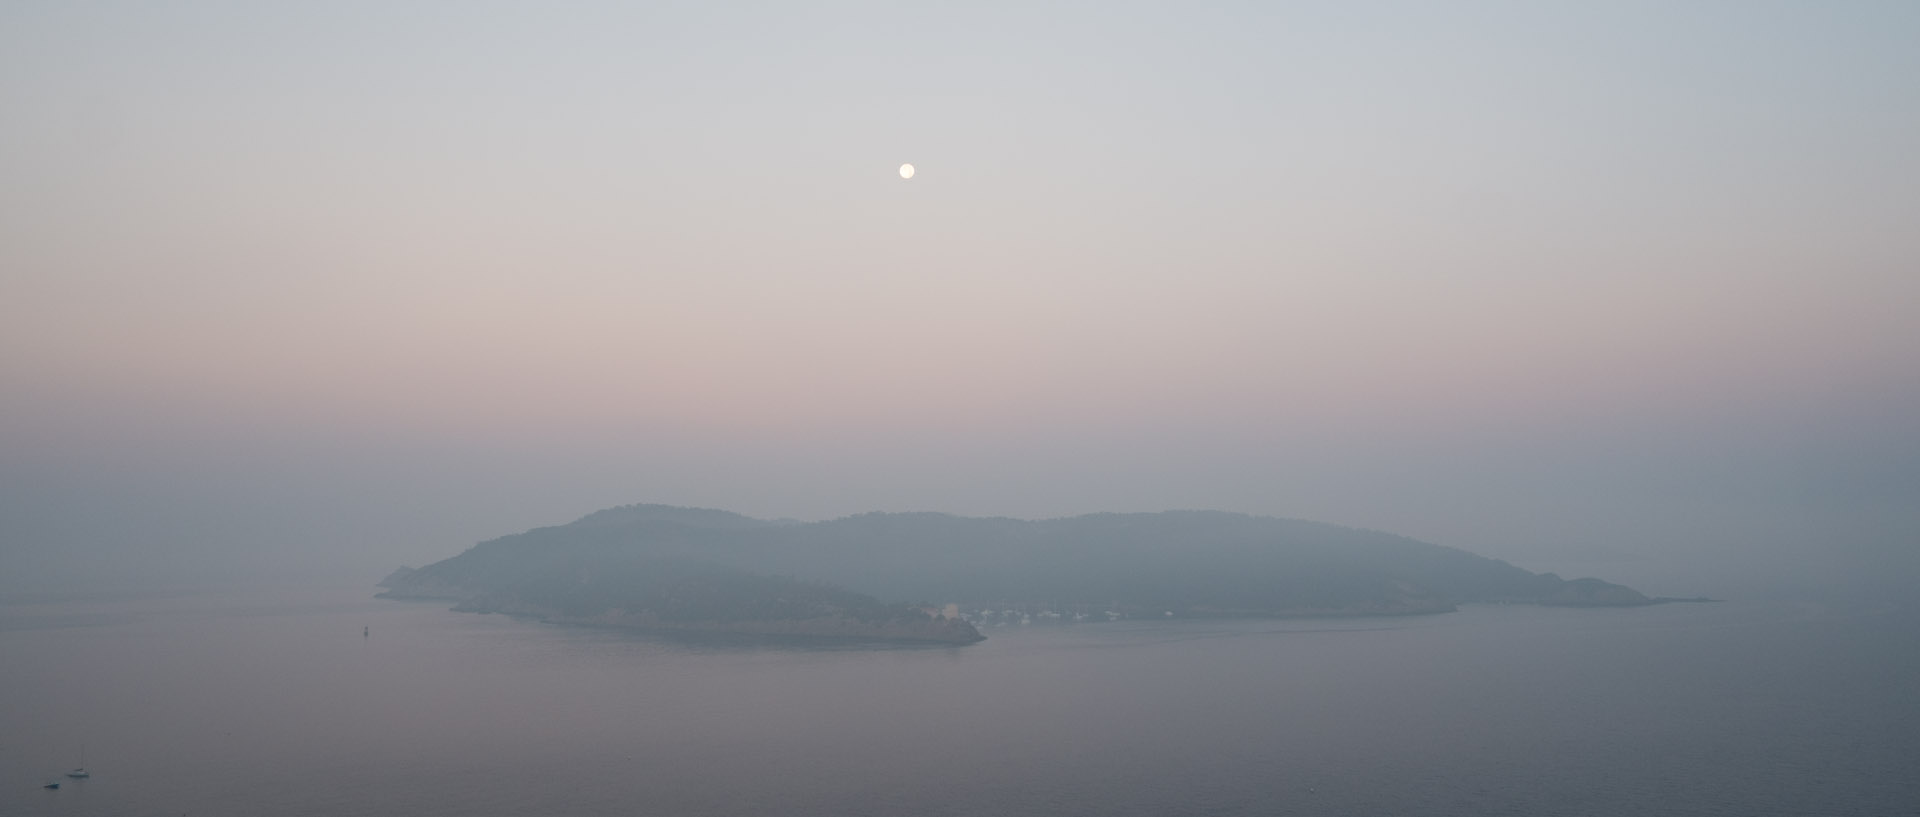 Pleine Lune sur Port-Cros, à l'aube.